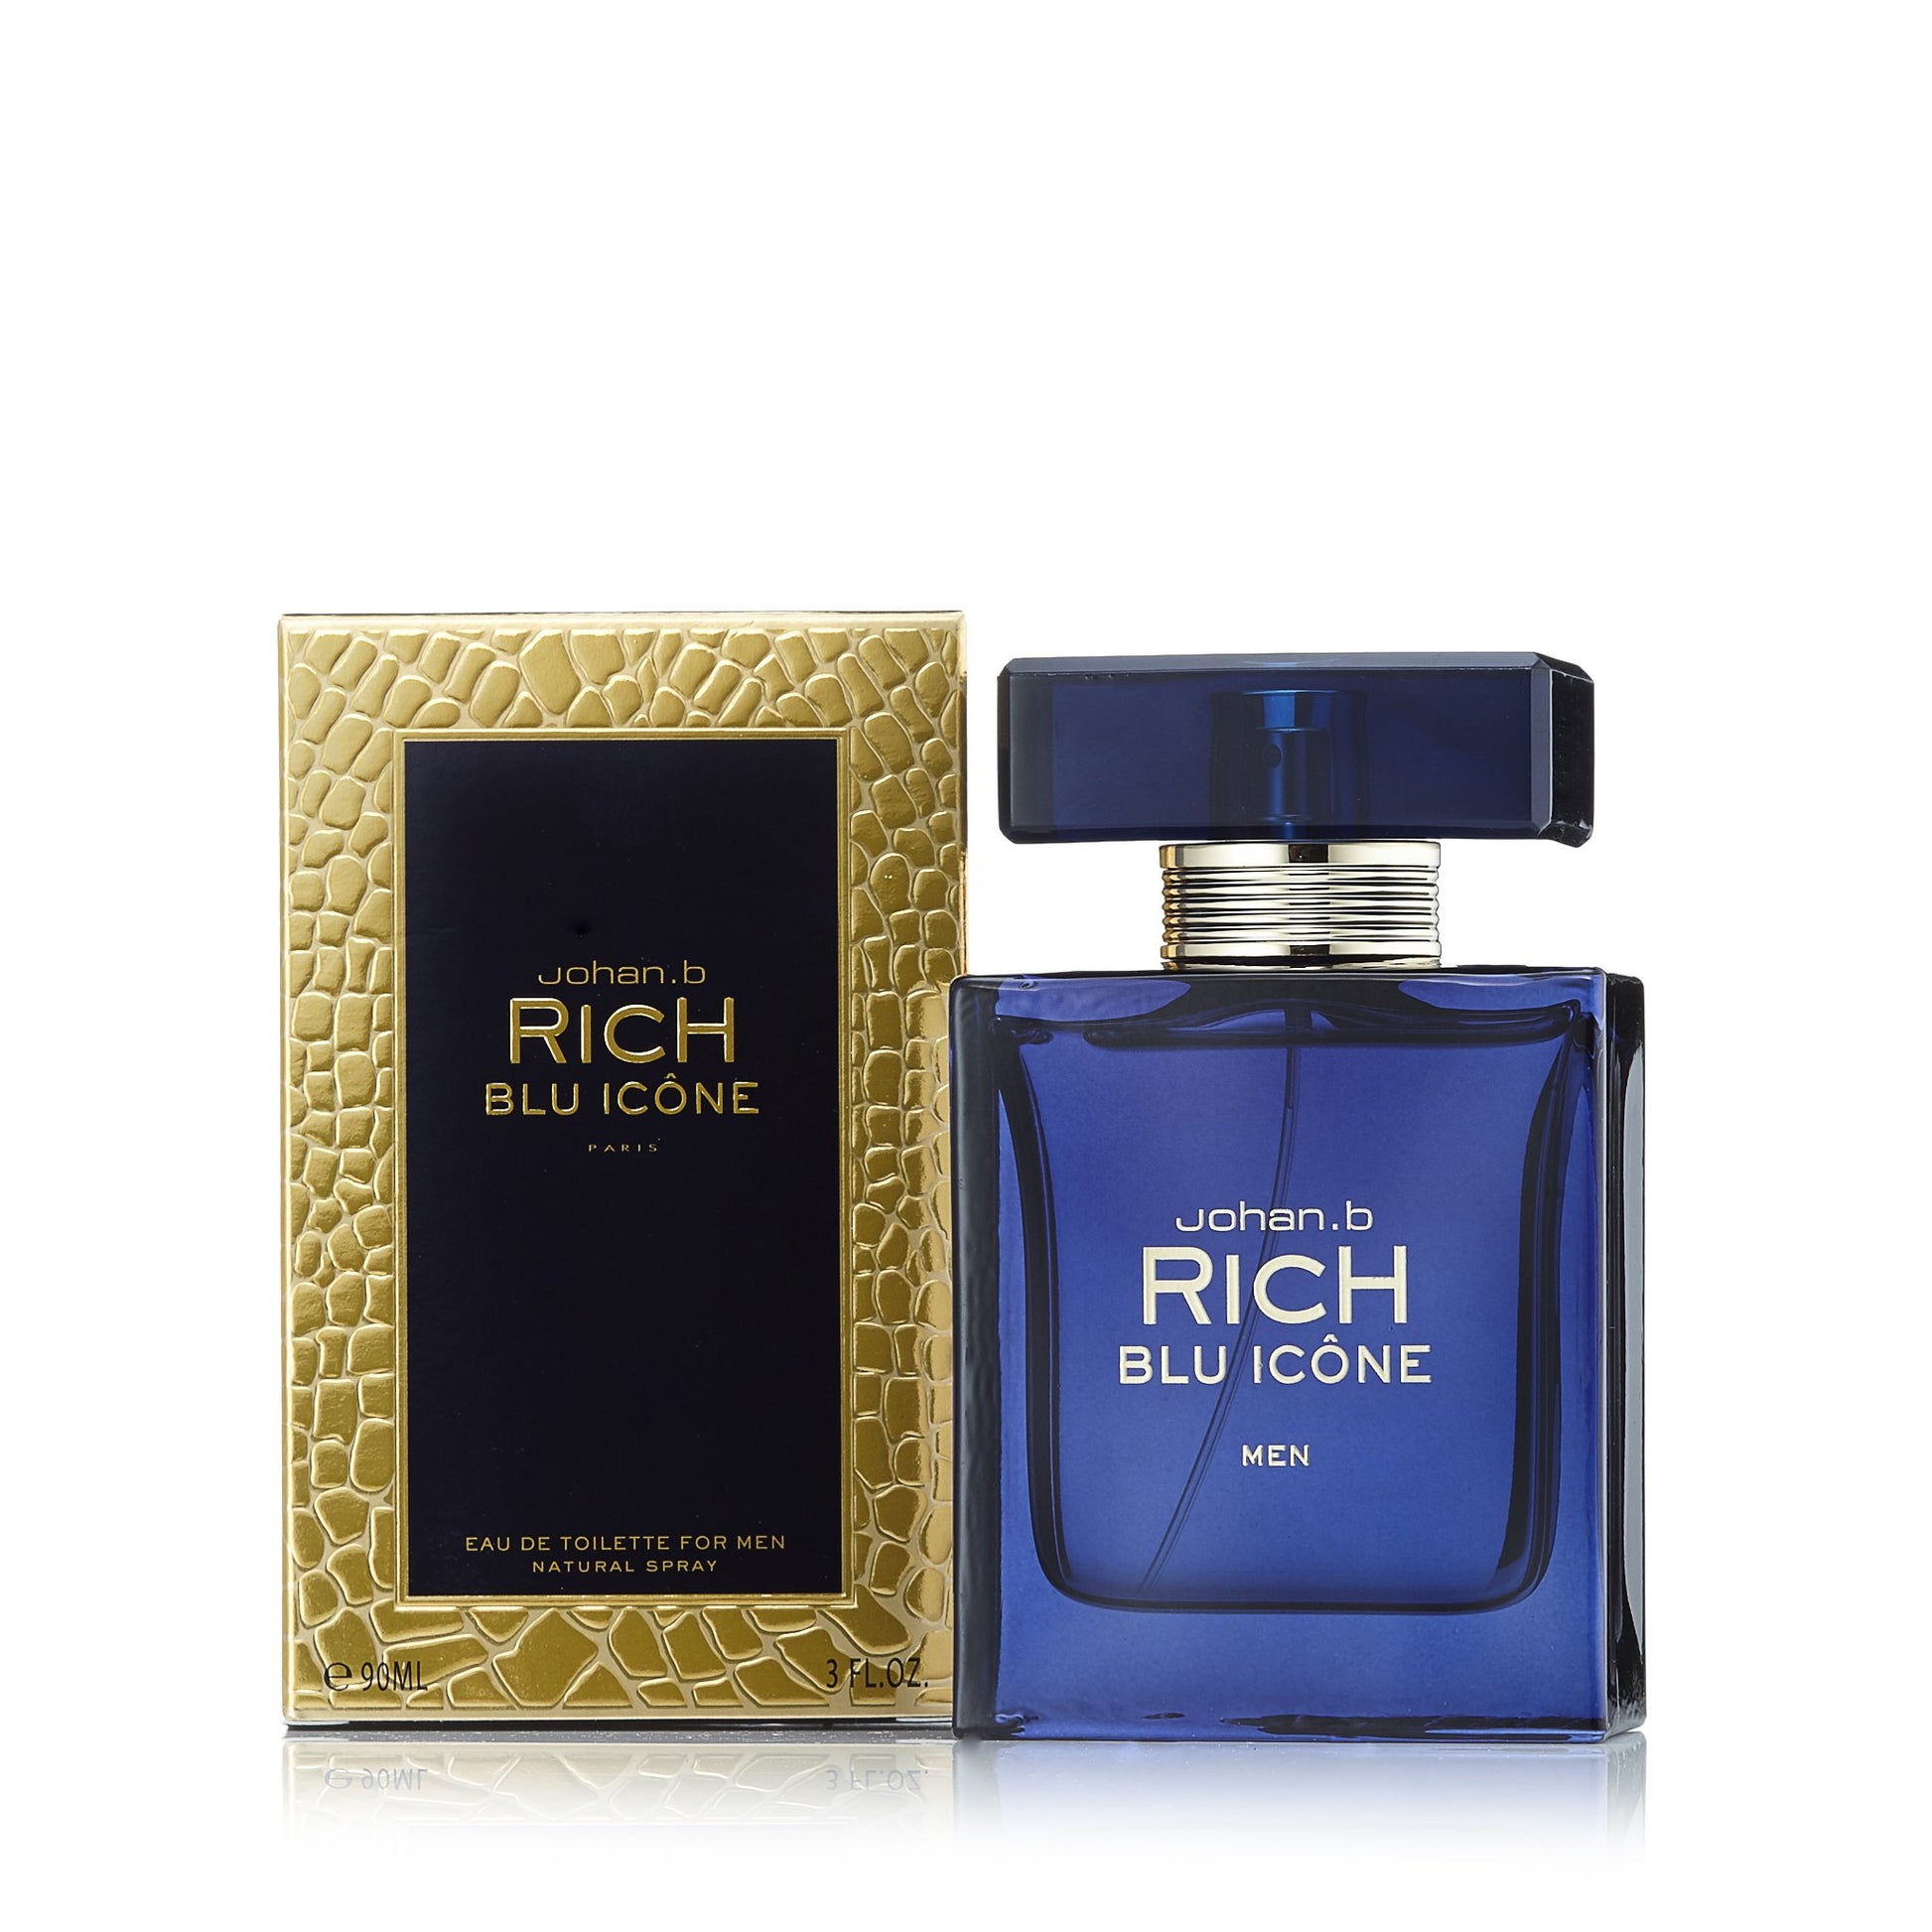 Rich Blu Icone Eau de Toilette Spray for Men, Product image 2